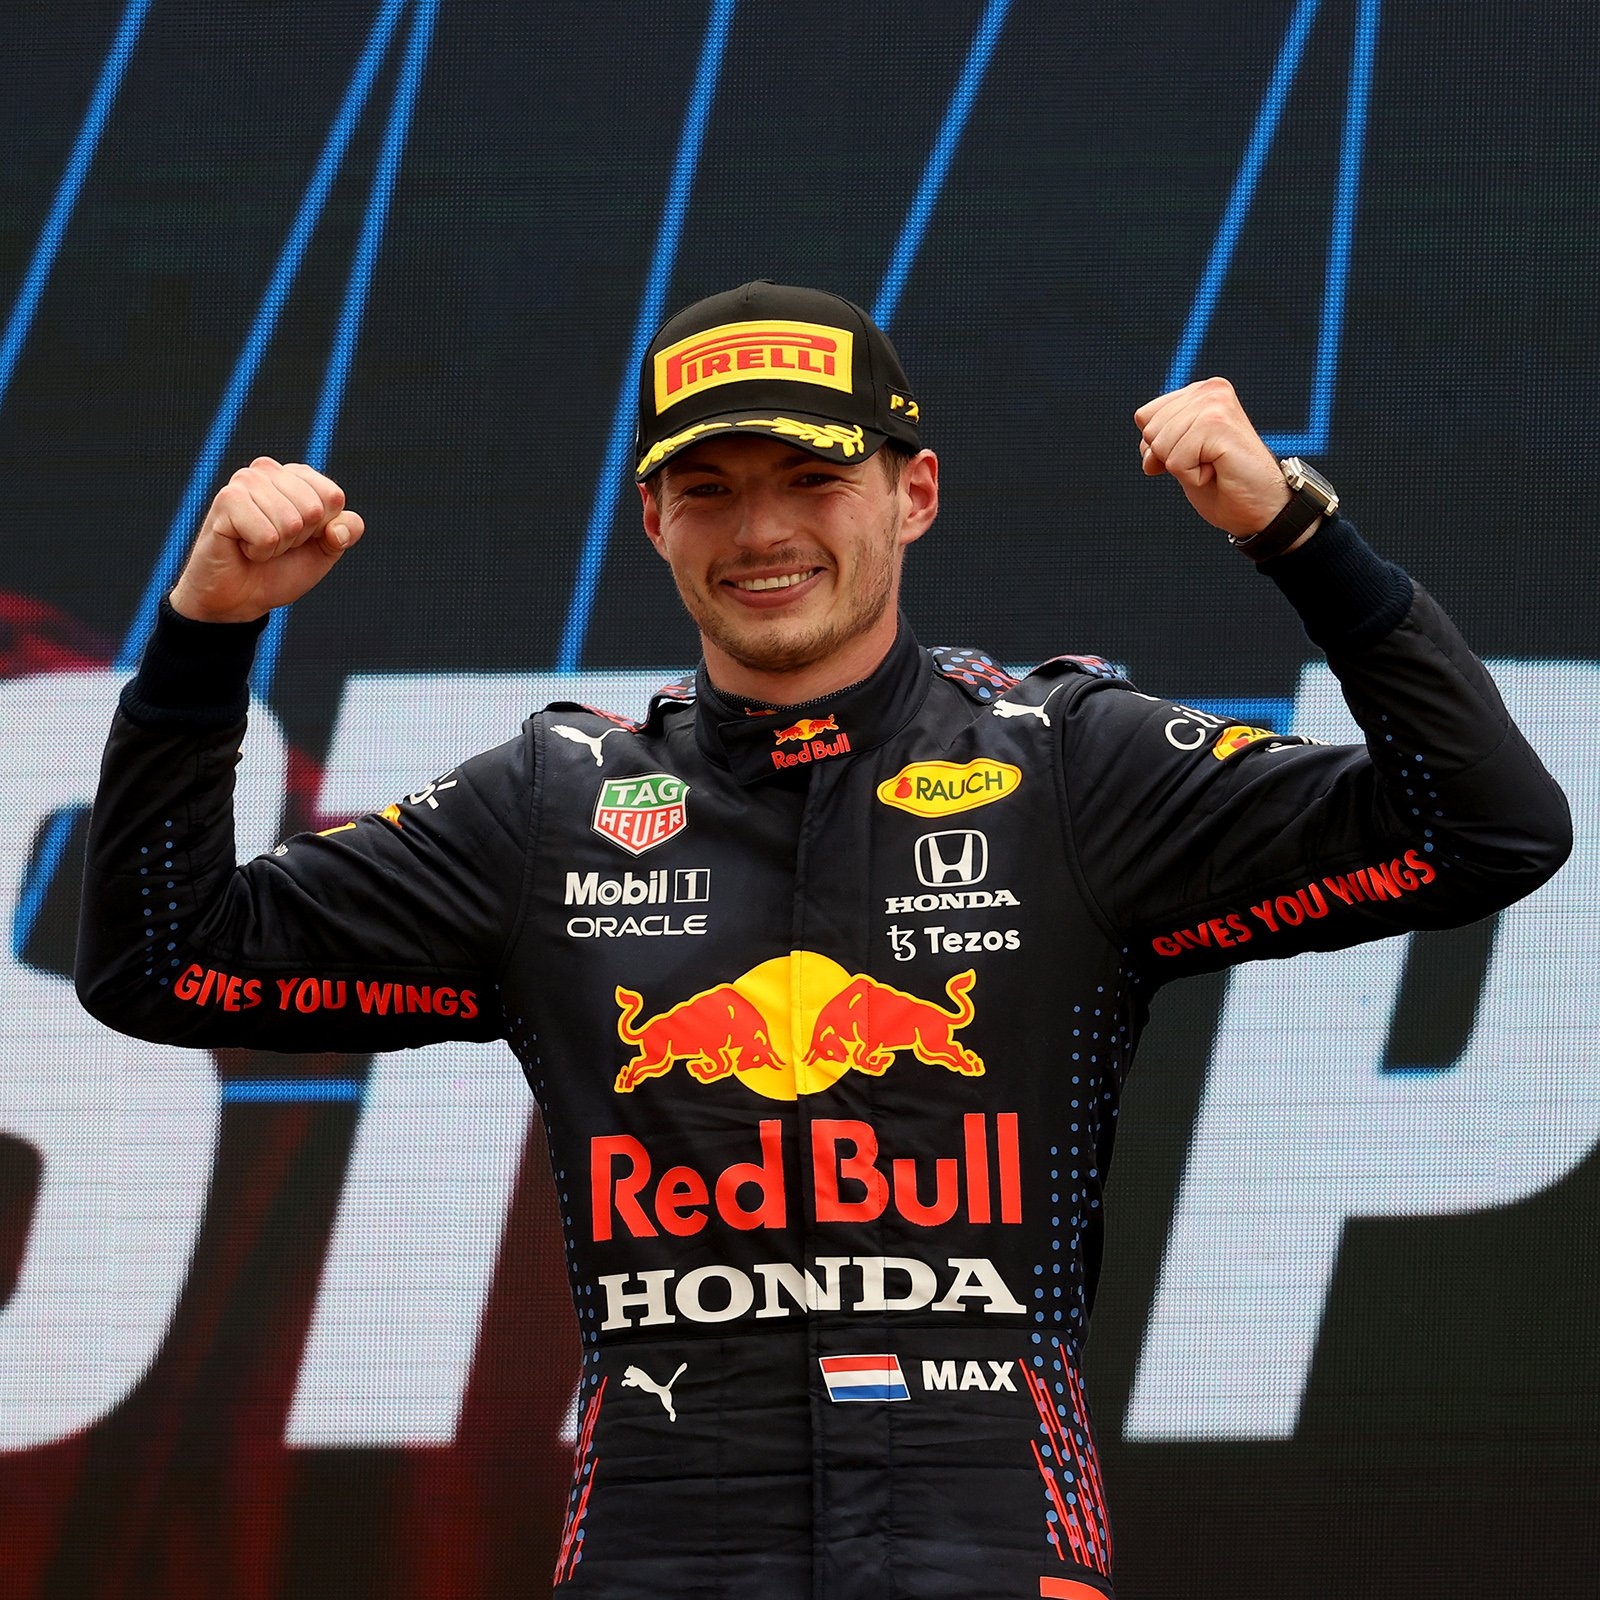 Max Verstappen obtiene su décimo Pole Position en el GP de Abu Dhabi